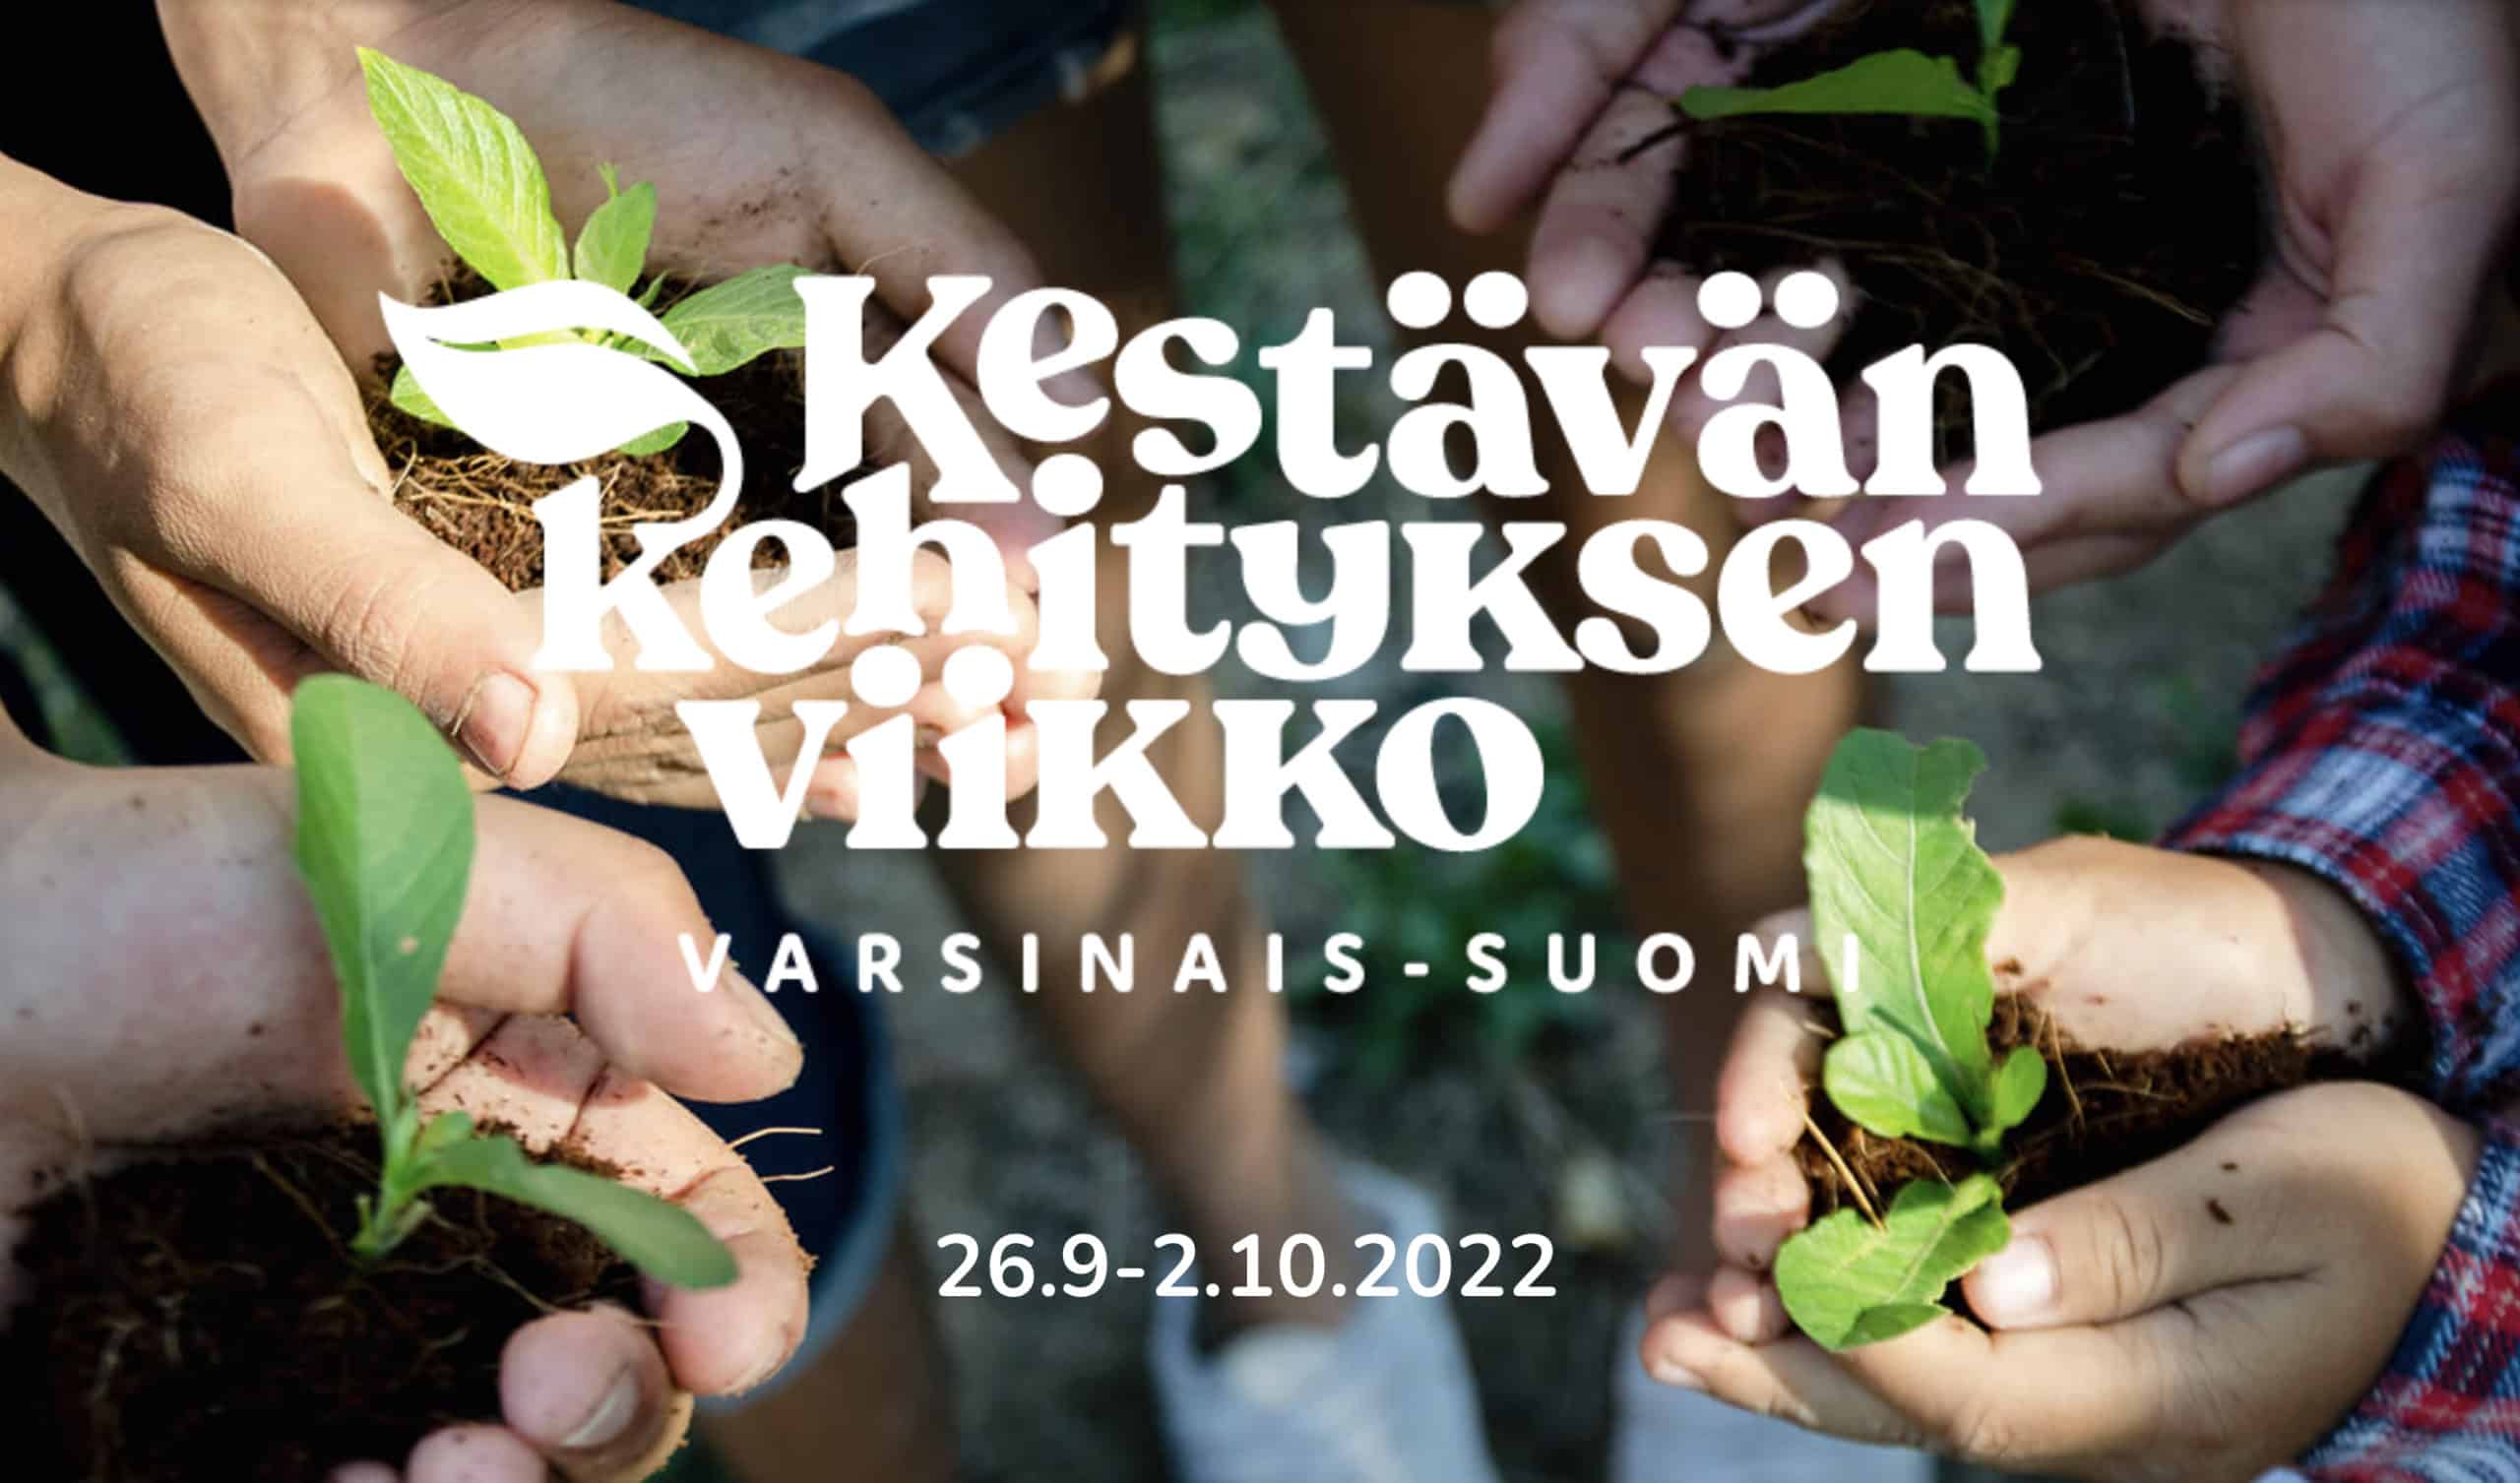 Taimia lasten käsissä ja kuva päällä teksti: Kestävän kehityksen viikko, Varsinais-Suomi, 26.9.–2.10.2022.